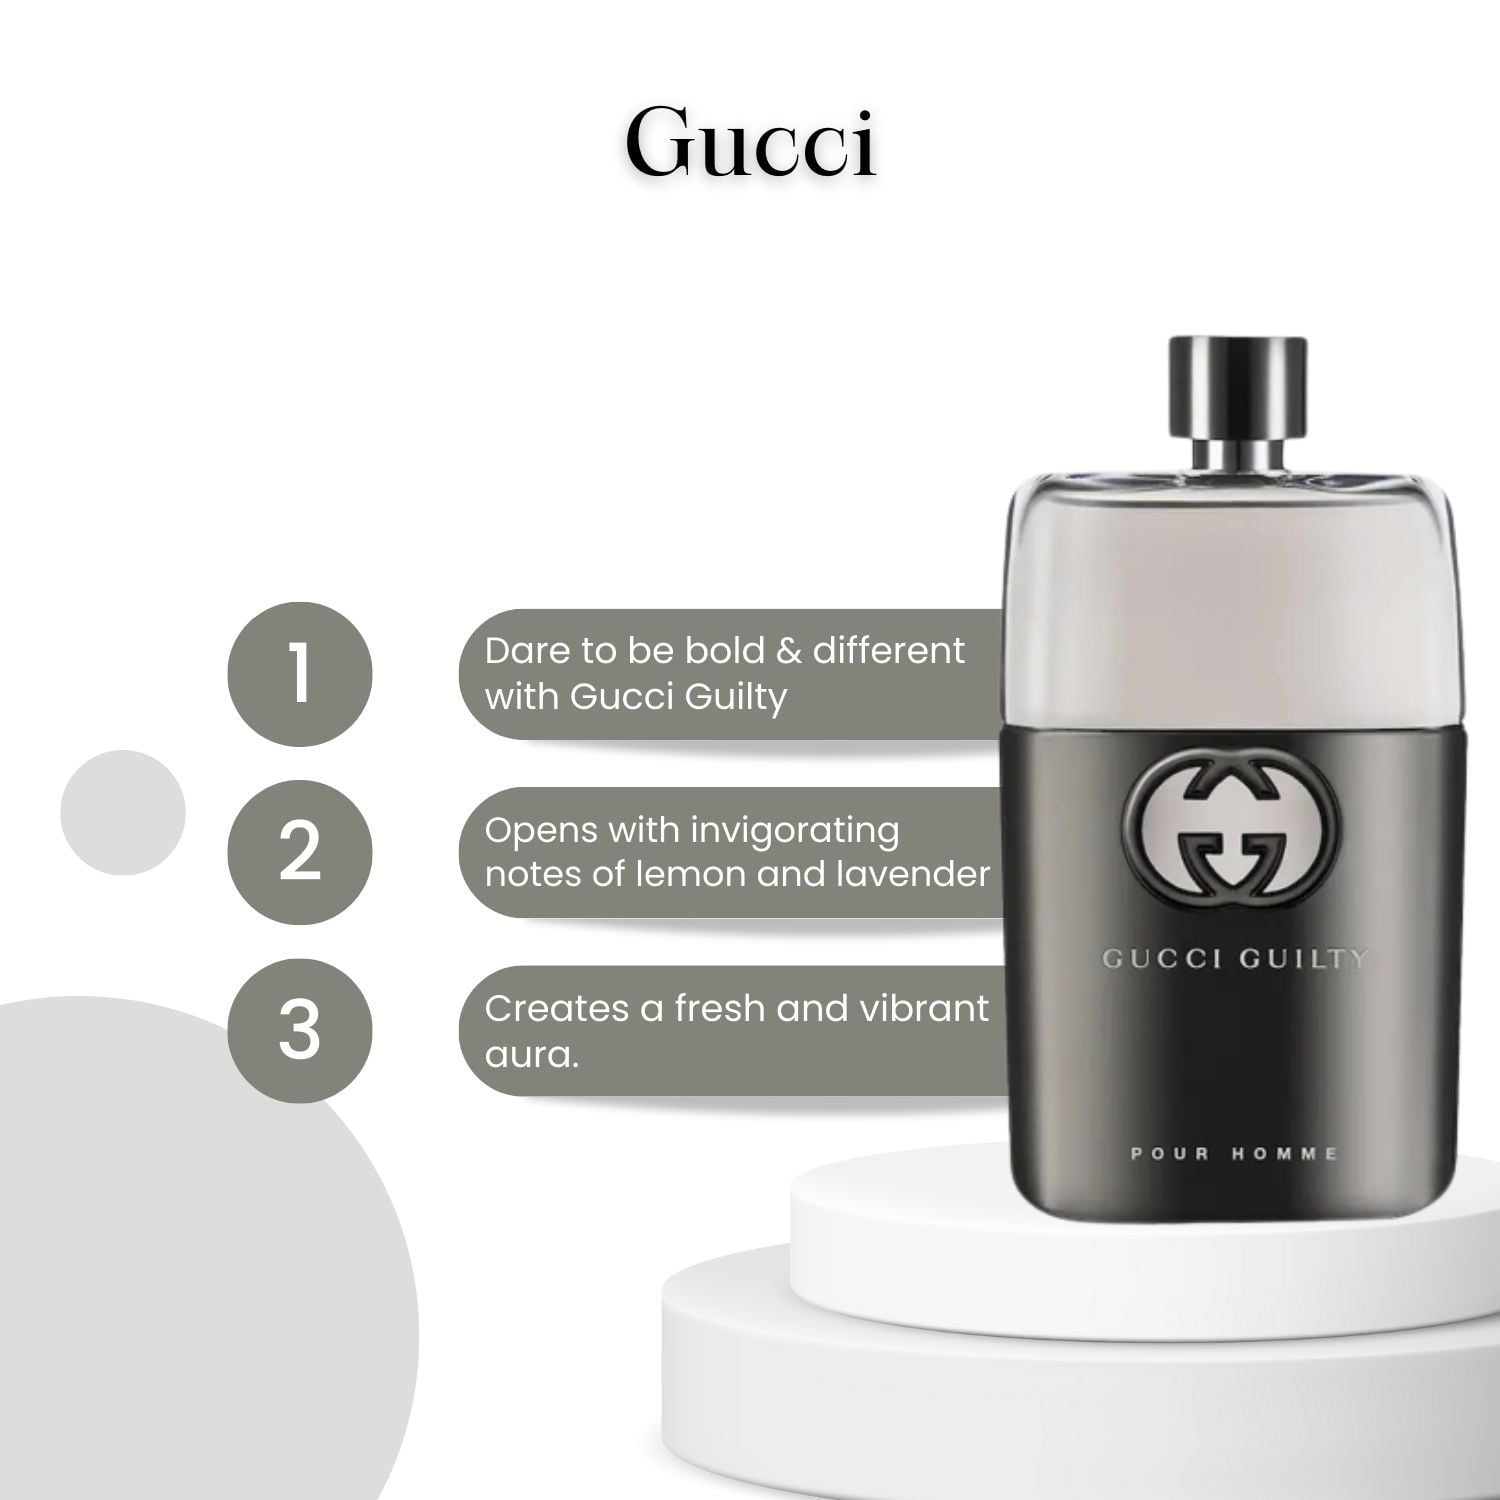 Gucci Guilty Pour Homme / Gucci EDT Spray 5.0 oz (150 ml) (m) 737052924922  - Fragrances & Beauty, Guilty Pour Homme - Jomashop